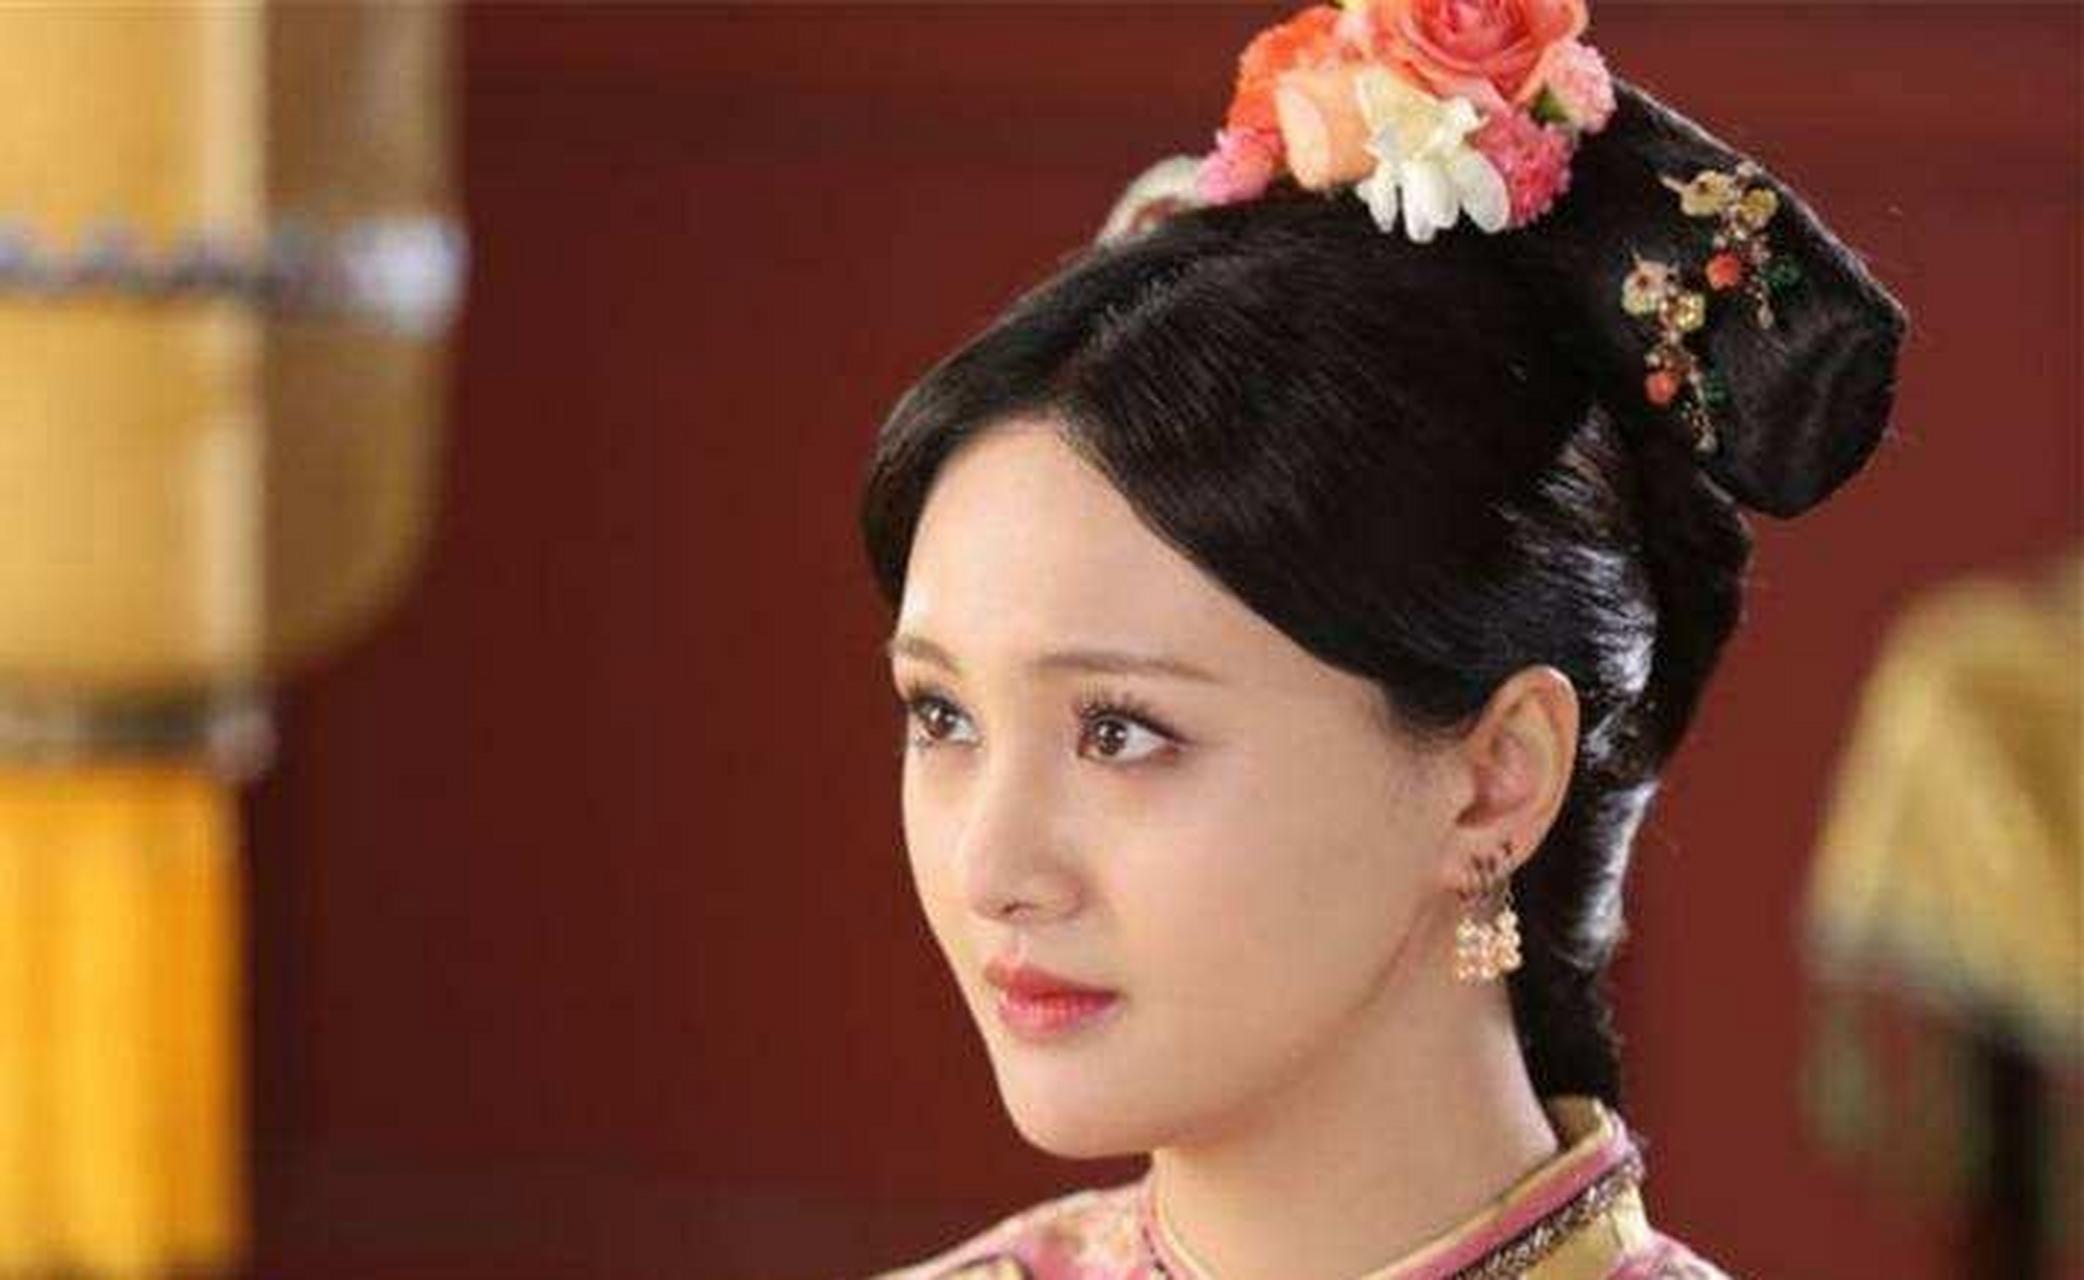 清朝唯一在乾清宫停灵的皇后,11岁嫁人,康熙为了她不惜违反祖制